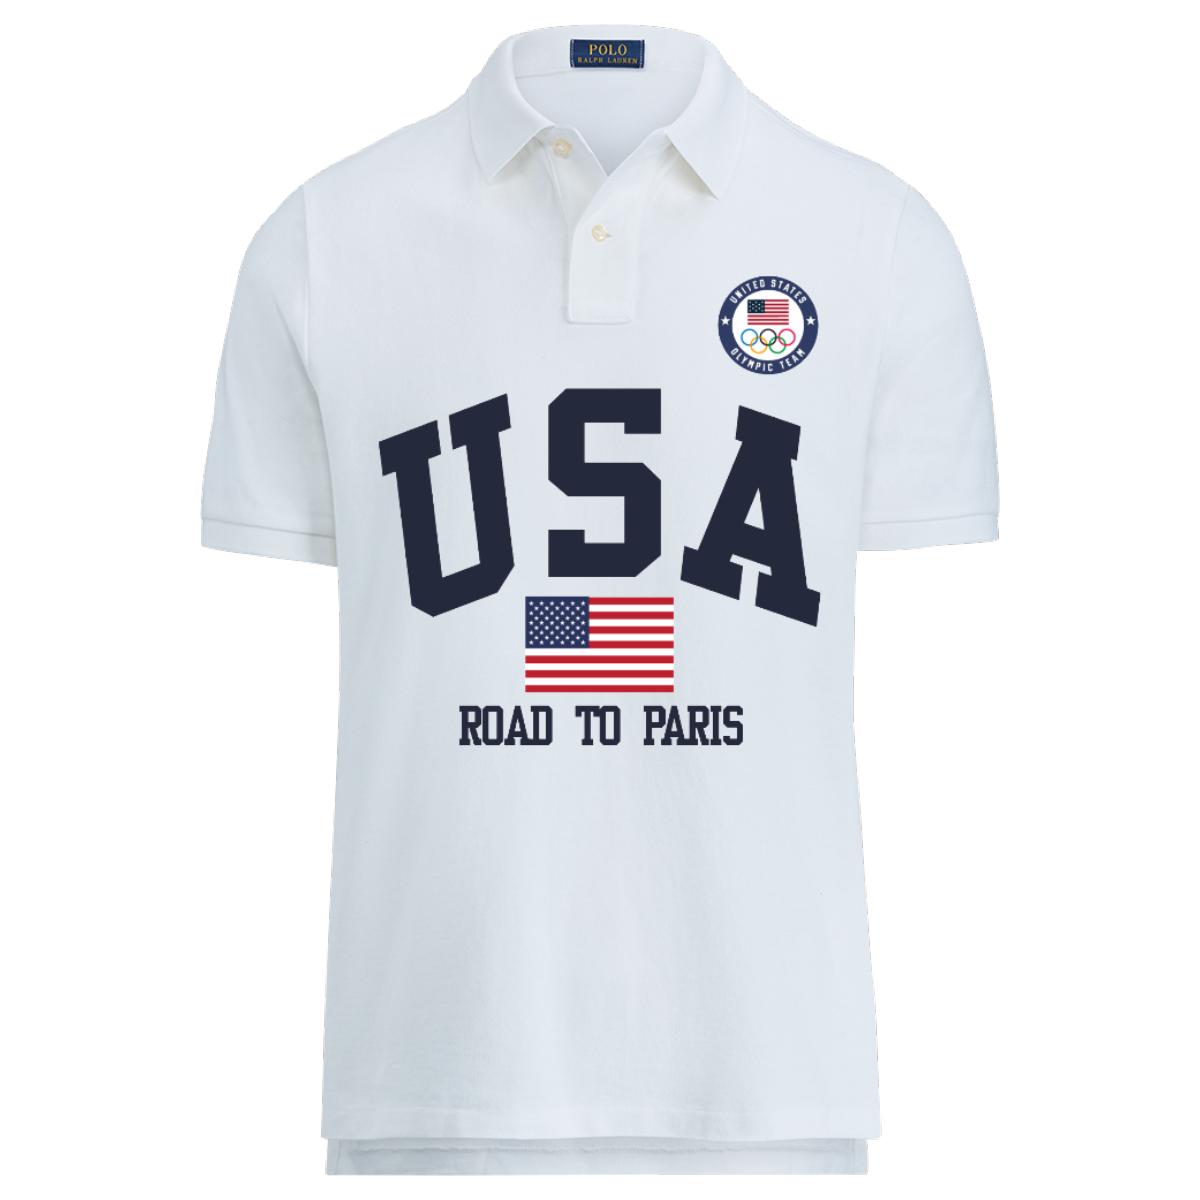 Polo Ralph Lauren Short Sleeve V-Neck Tee Shirt - Westport Big & Tall